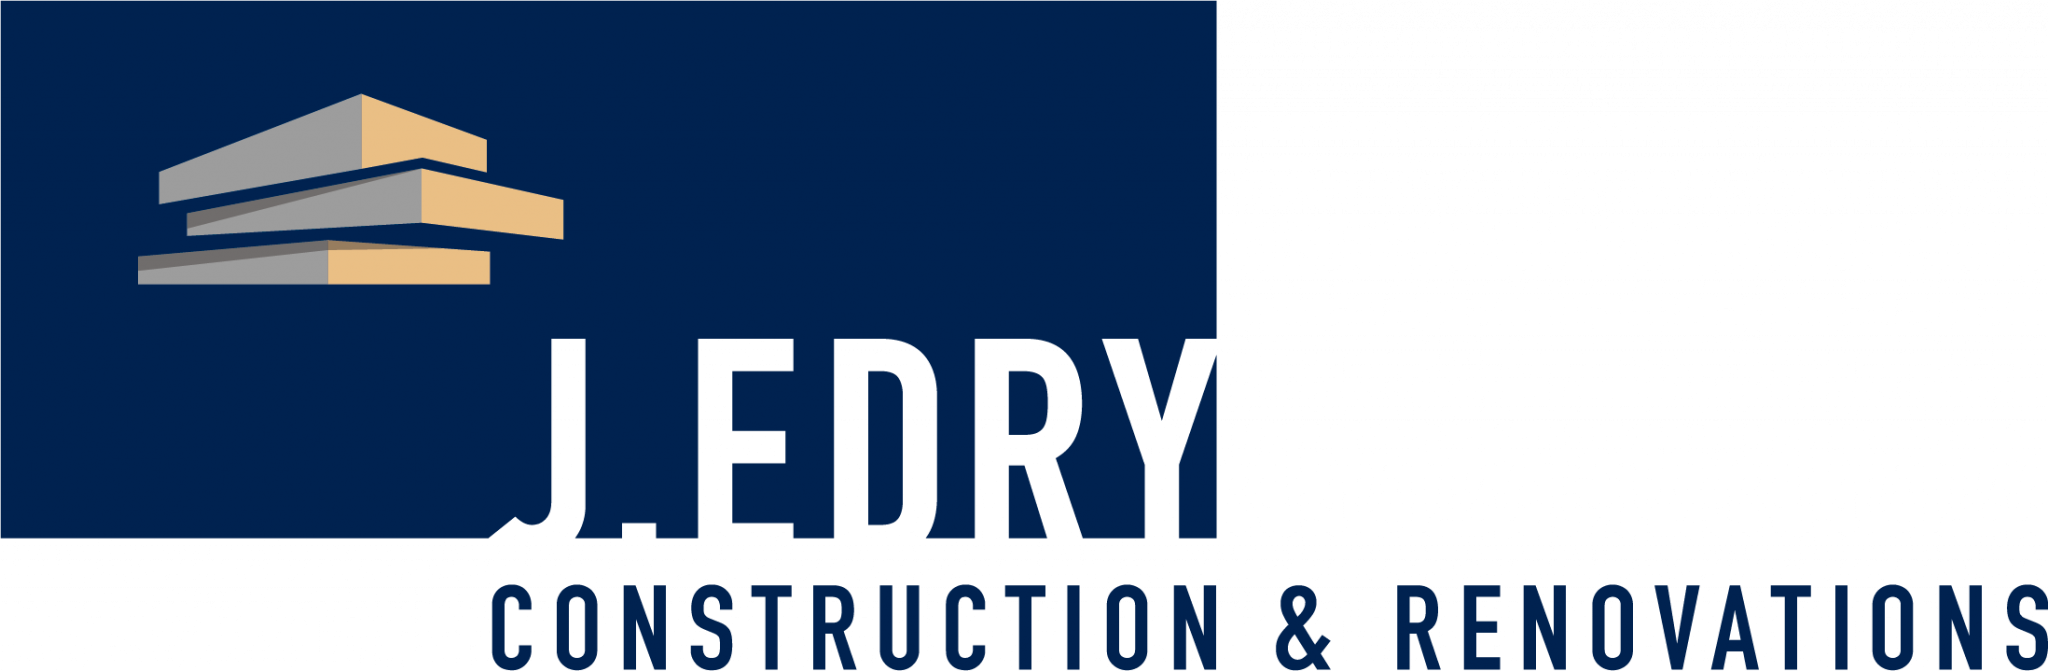 Company logo of Edry Construction